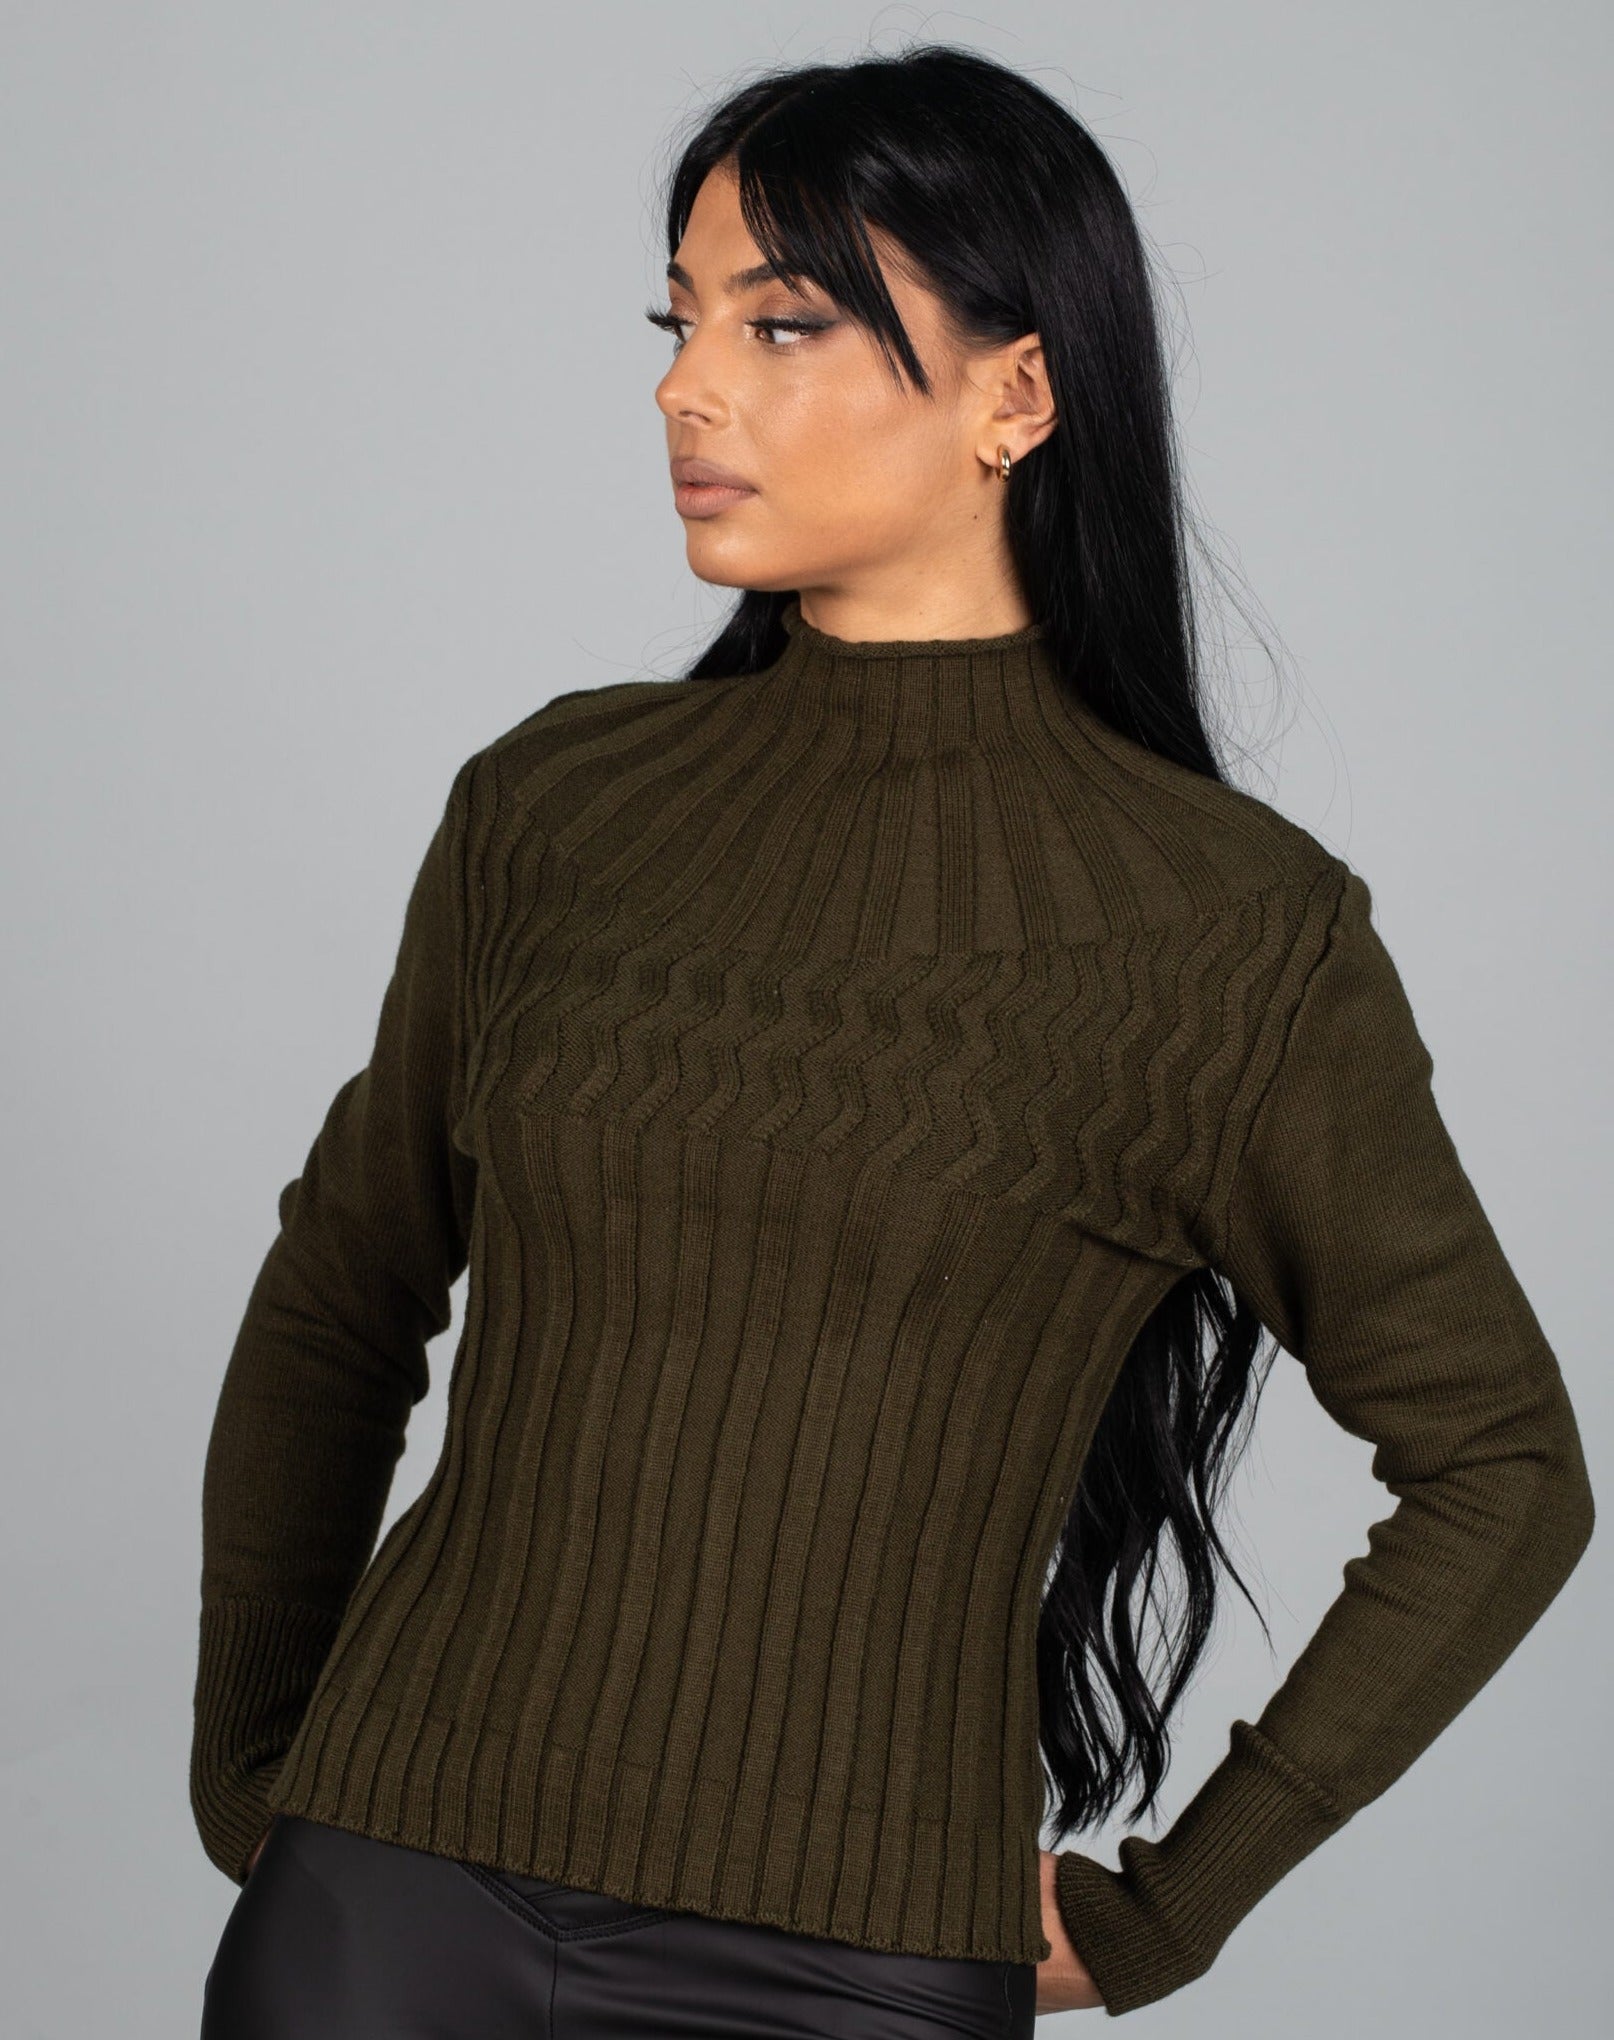 Дамска блуза LORNELA  https://bvseductive.com/products/дамска-блуза-lornela-2  60 % вискоза 40 % нилон топла дамска блуза в маслено зелен цвят модел по тялото с&nbsp; поло яка стил и топлина с блуза&nbsp;LORNELA